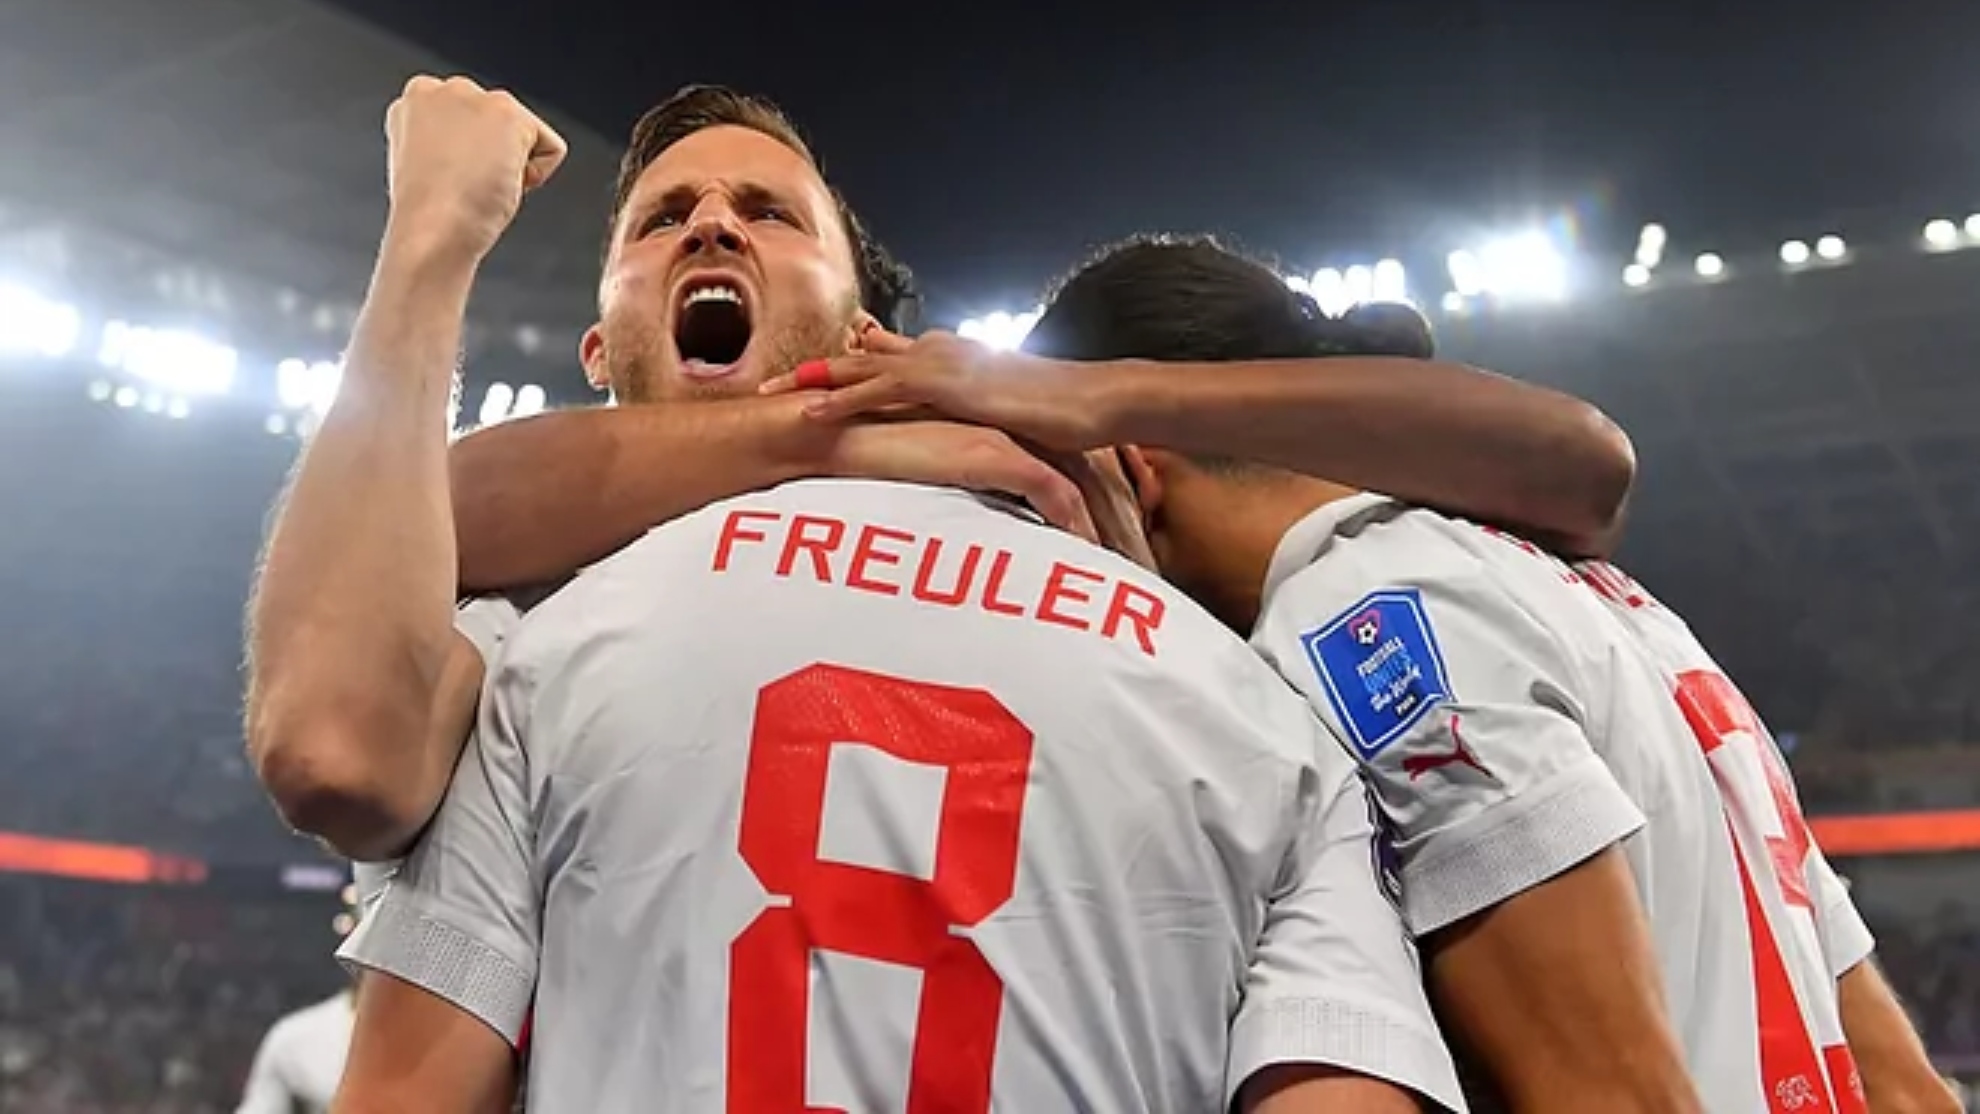 La selección de Suiza celebra el 2-3, obra de Freuler.